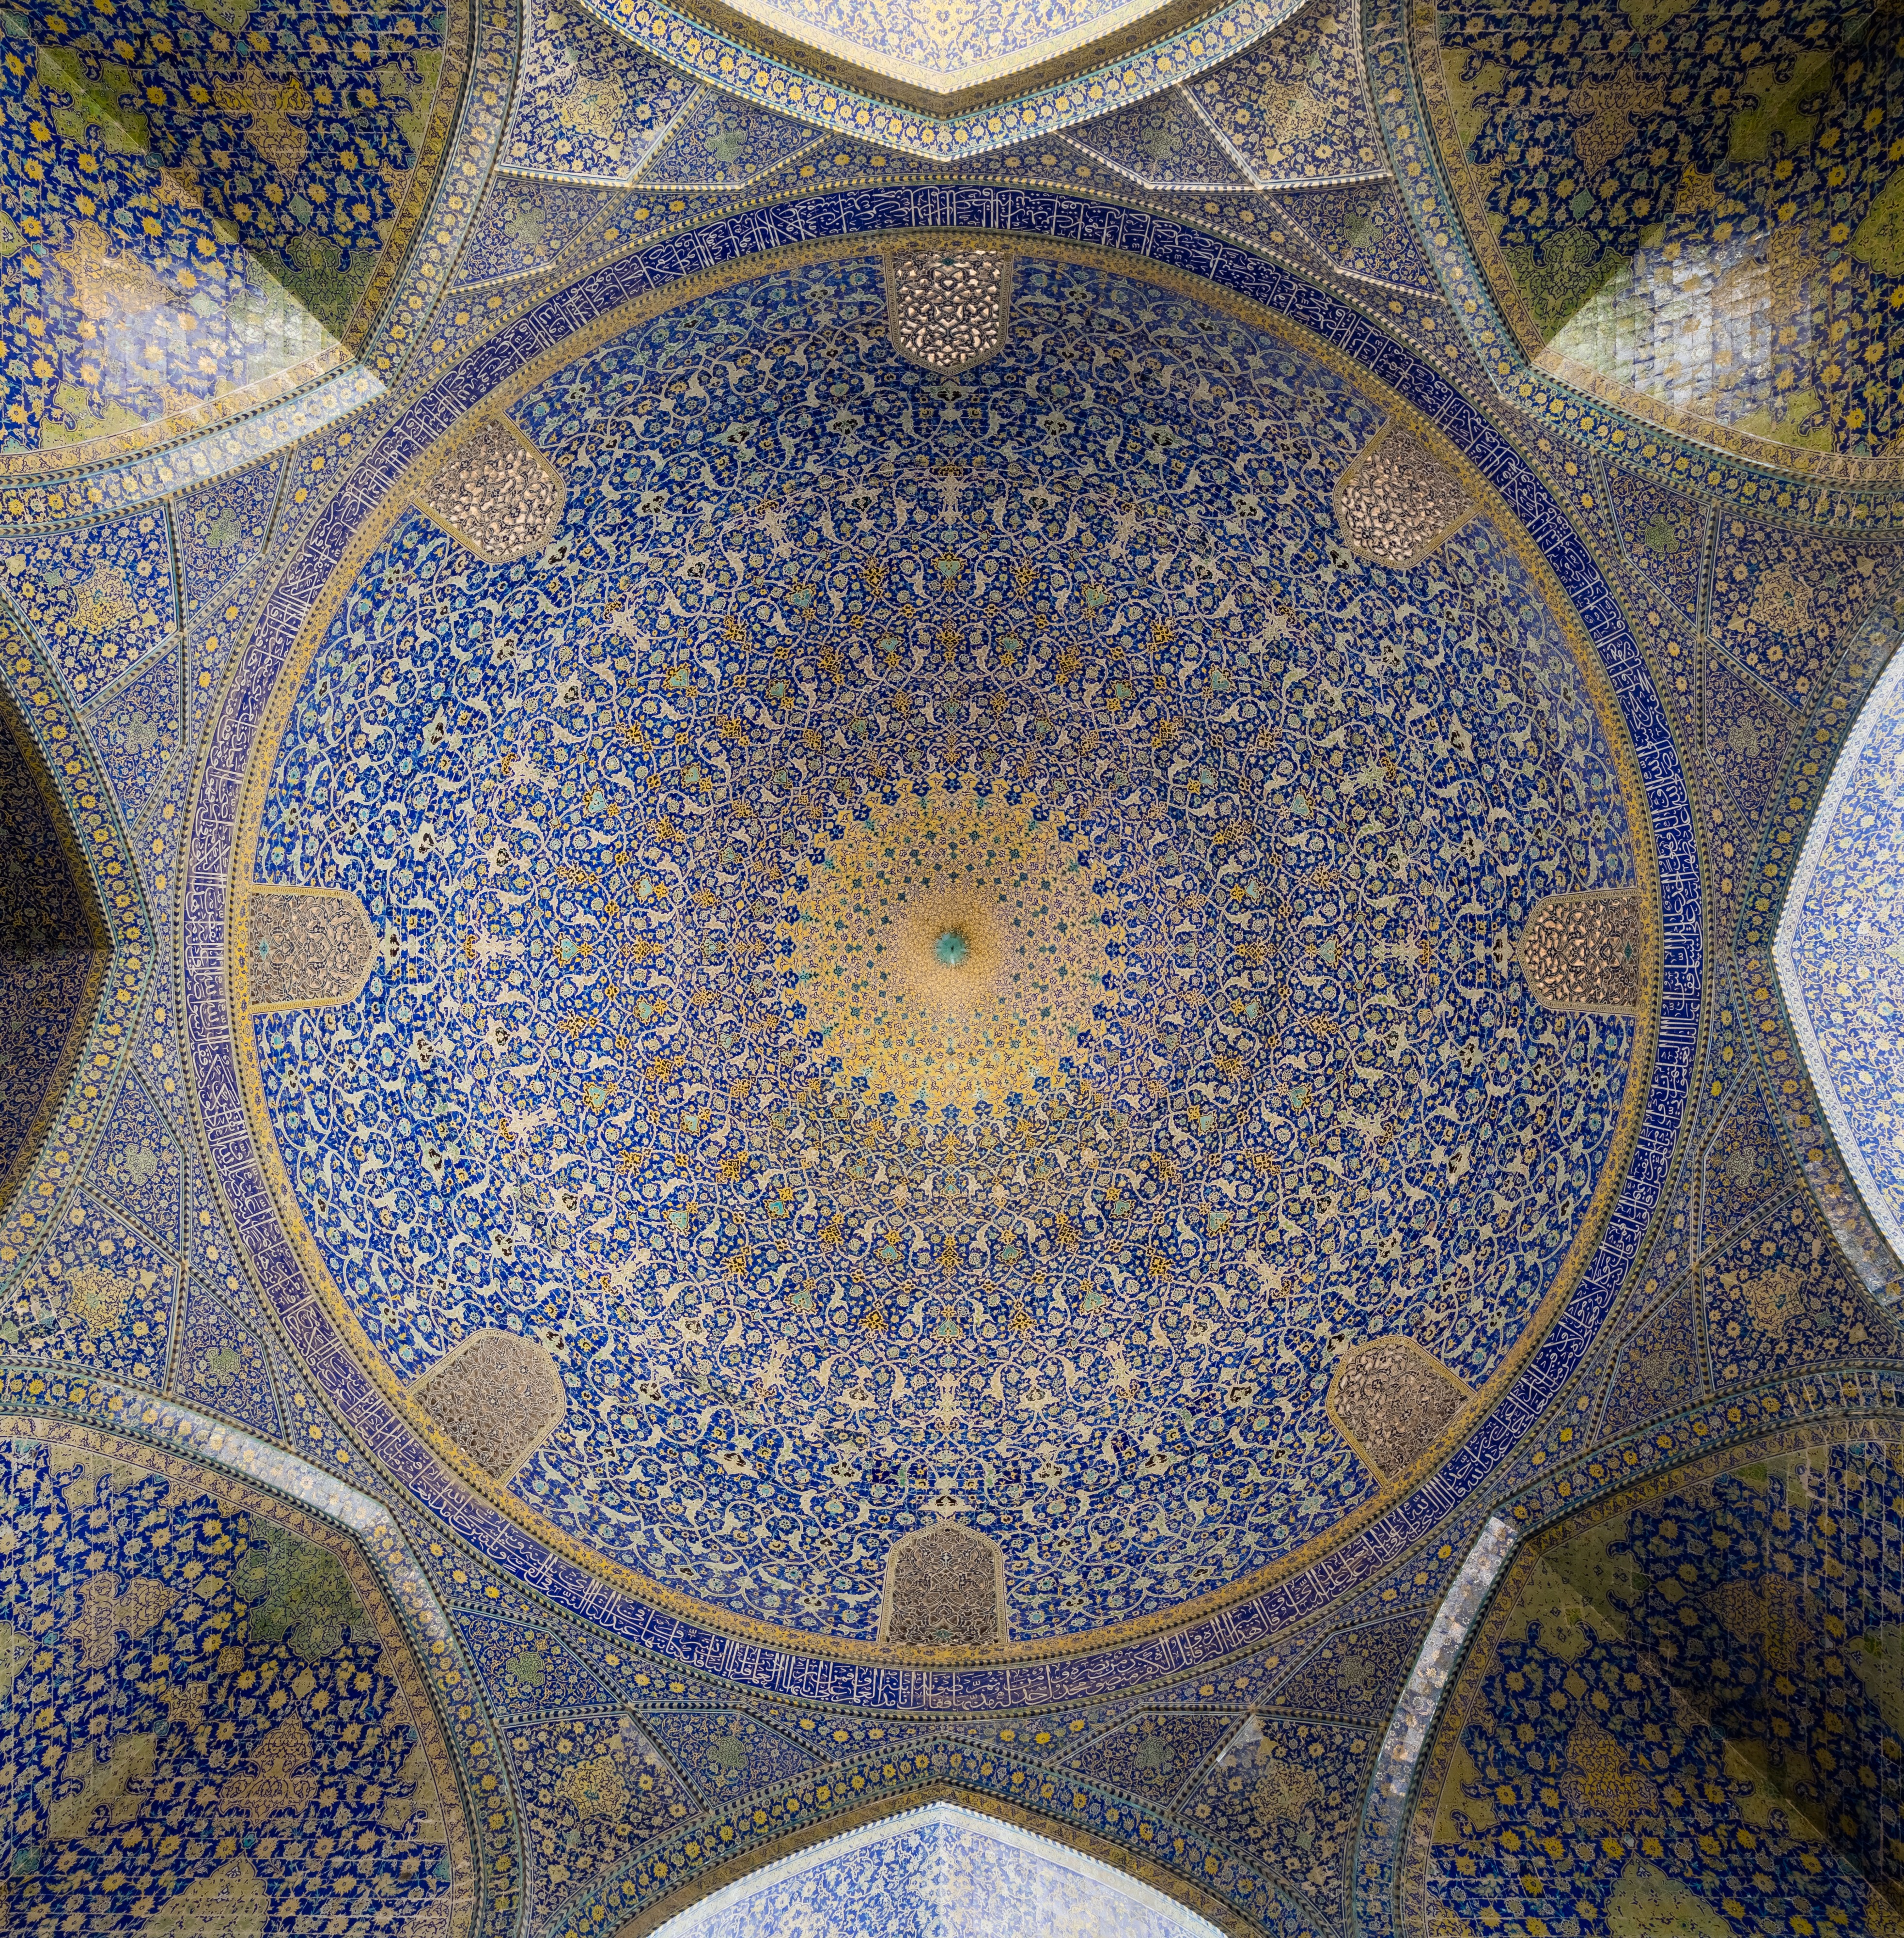 Gran Mezquita de Isfahán, Isfahán, Irán, 2016-09-20, DD 65-67 HDR